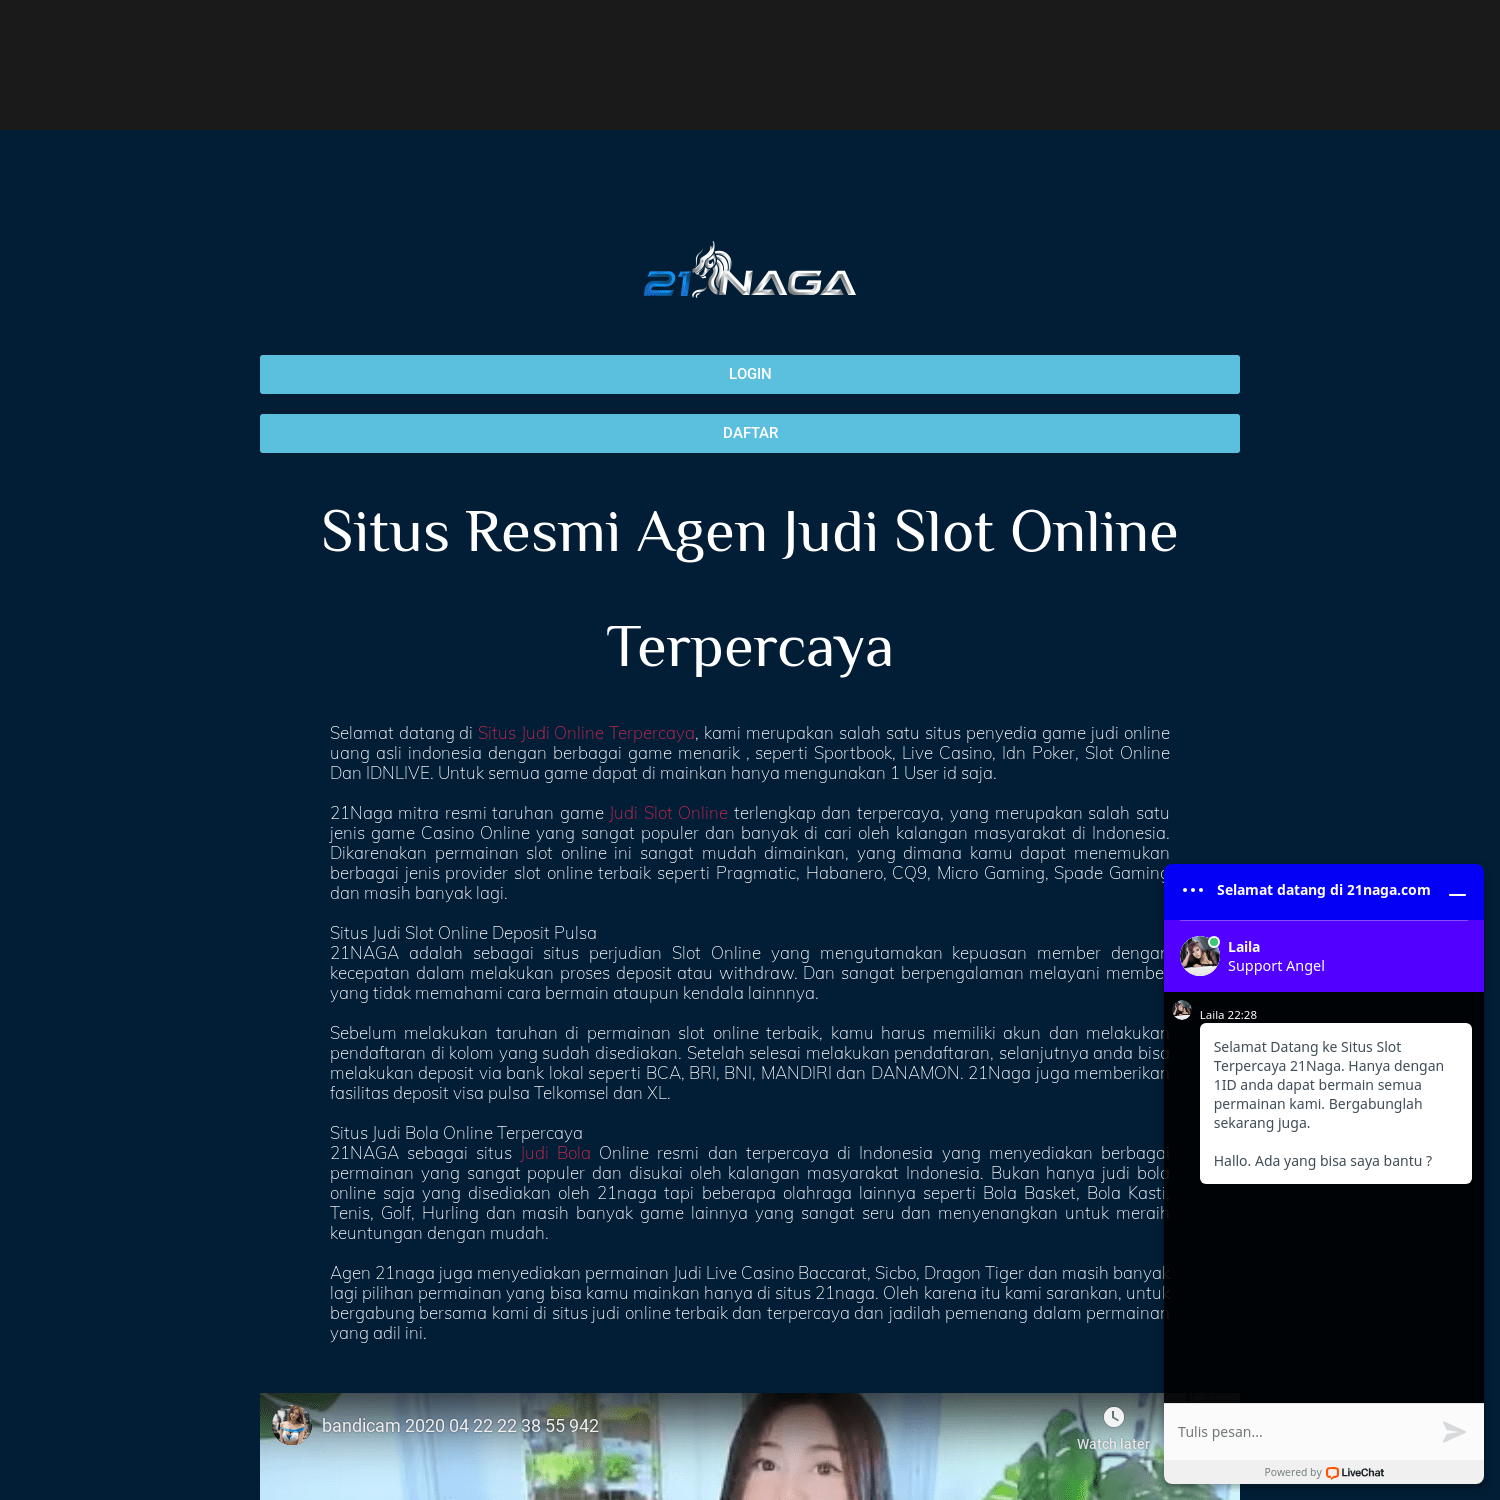 Situs Resmi Agen Judi Slot Online Terbaru Dan Terpercaya